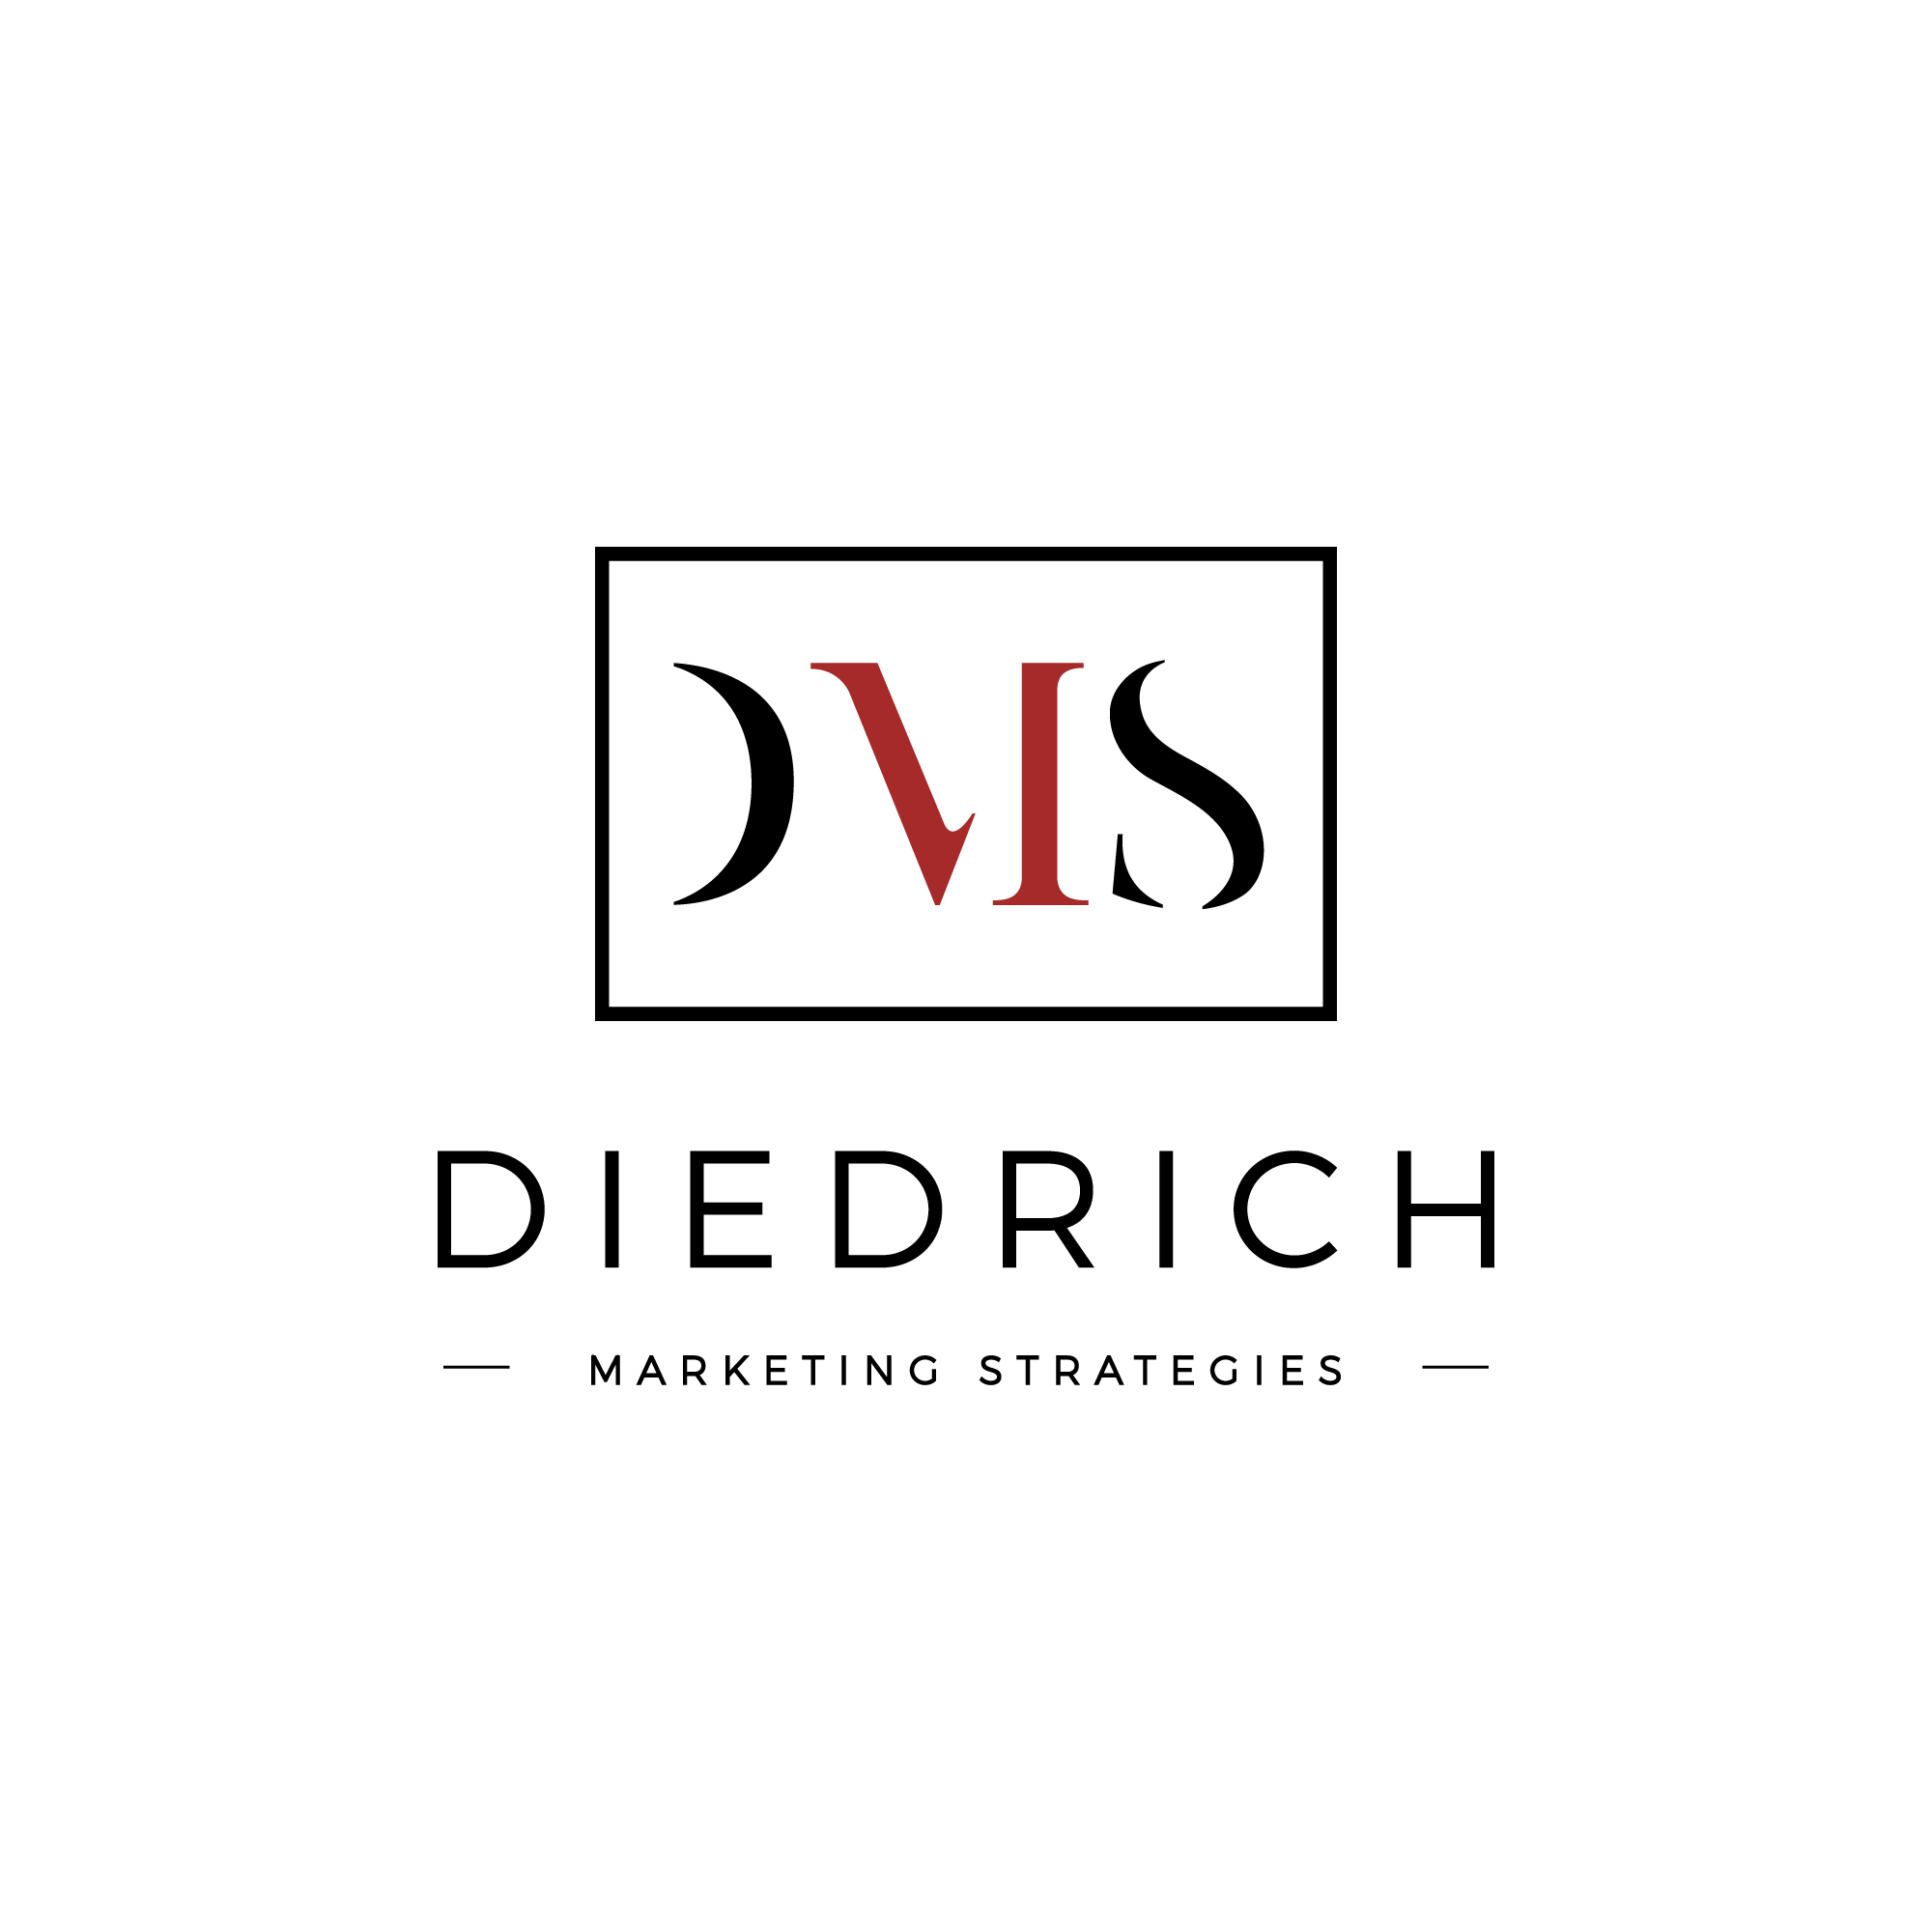 Diedrich Marketing Strategies